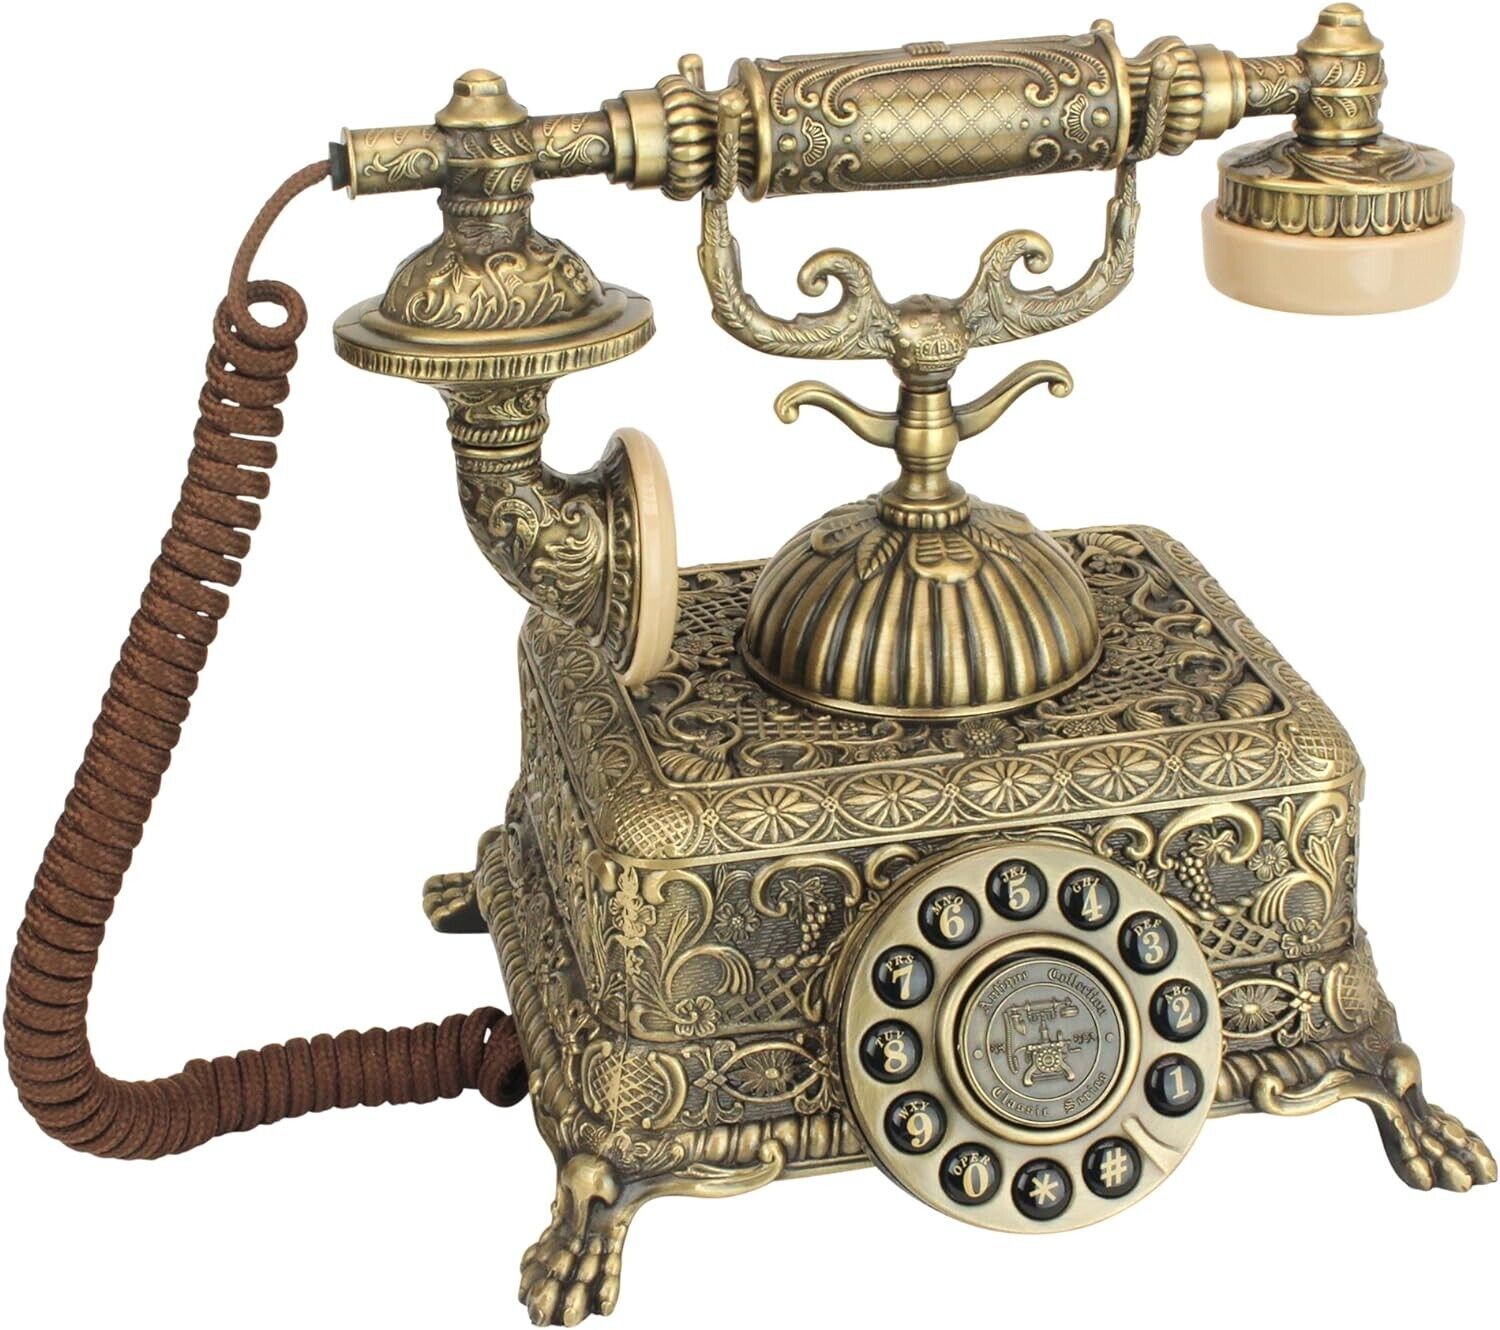 Antique Grand Emperor 1933 Rotary Corded Retro Phone-Vintage Telephones, Bronze